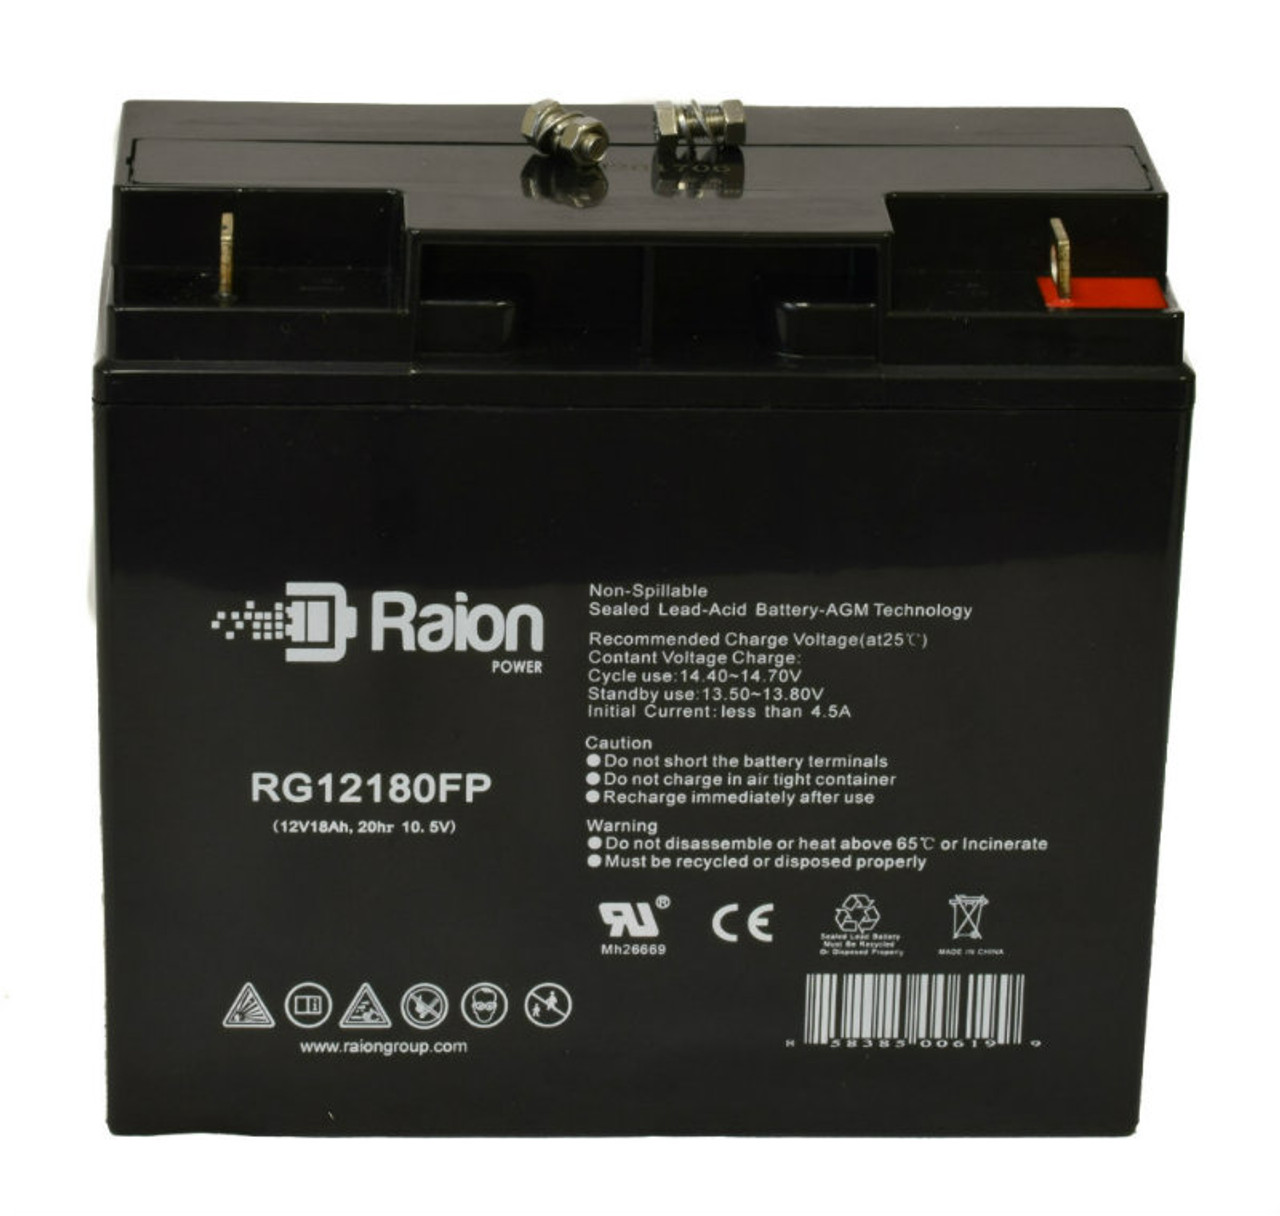 Raion Power RG12180FP 12V 18Ah Lead Acid Battery for Nair NR12-20